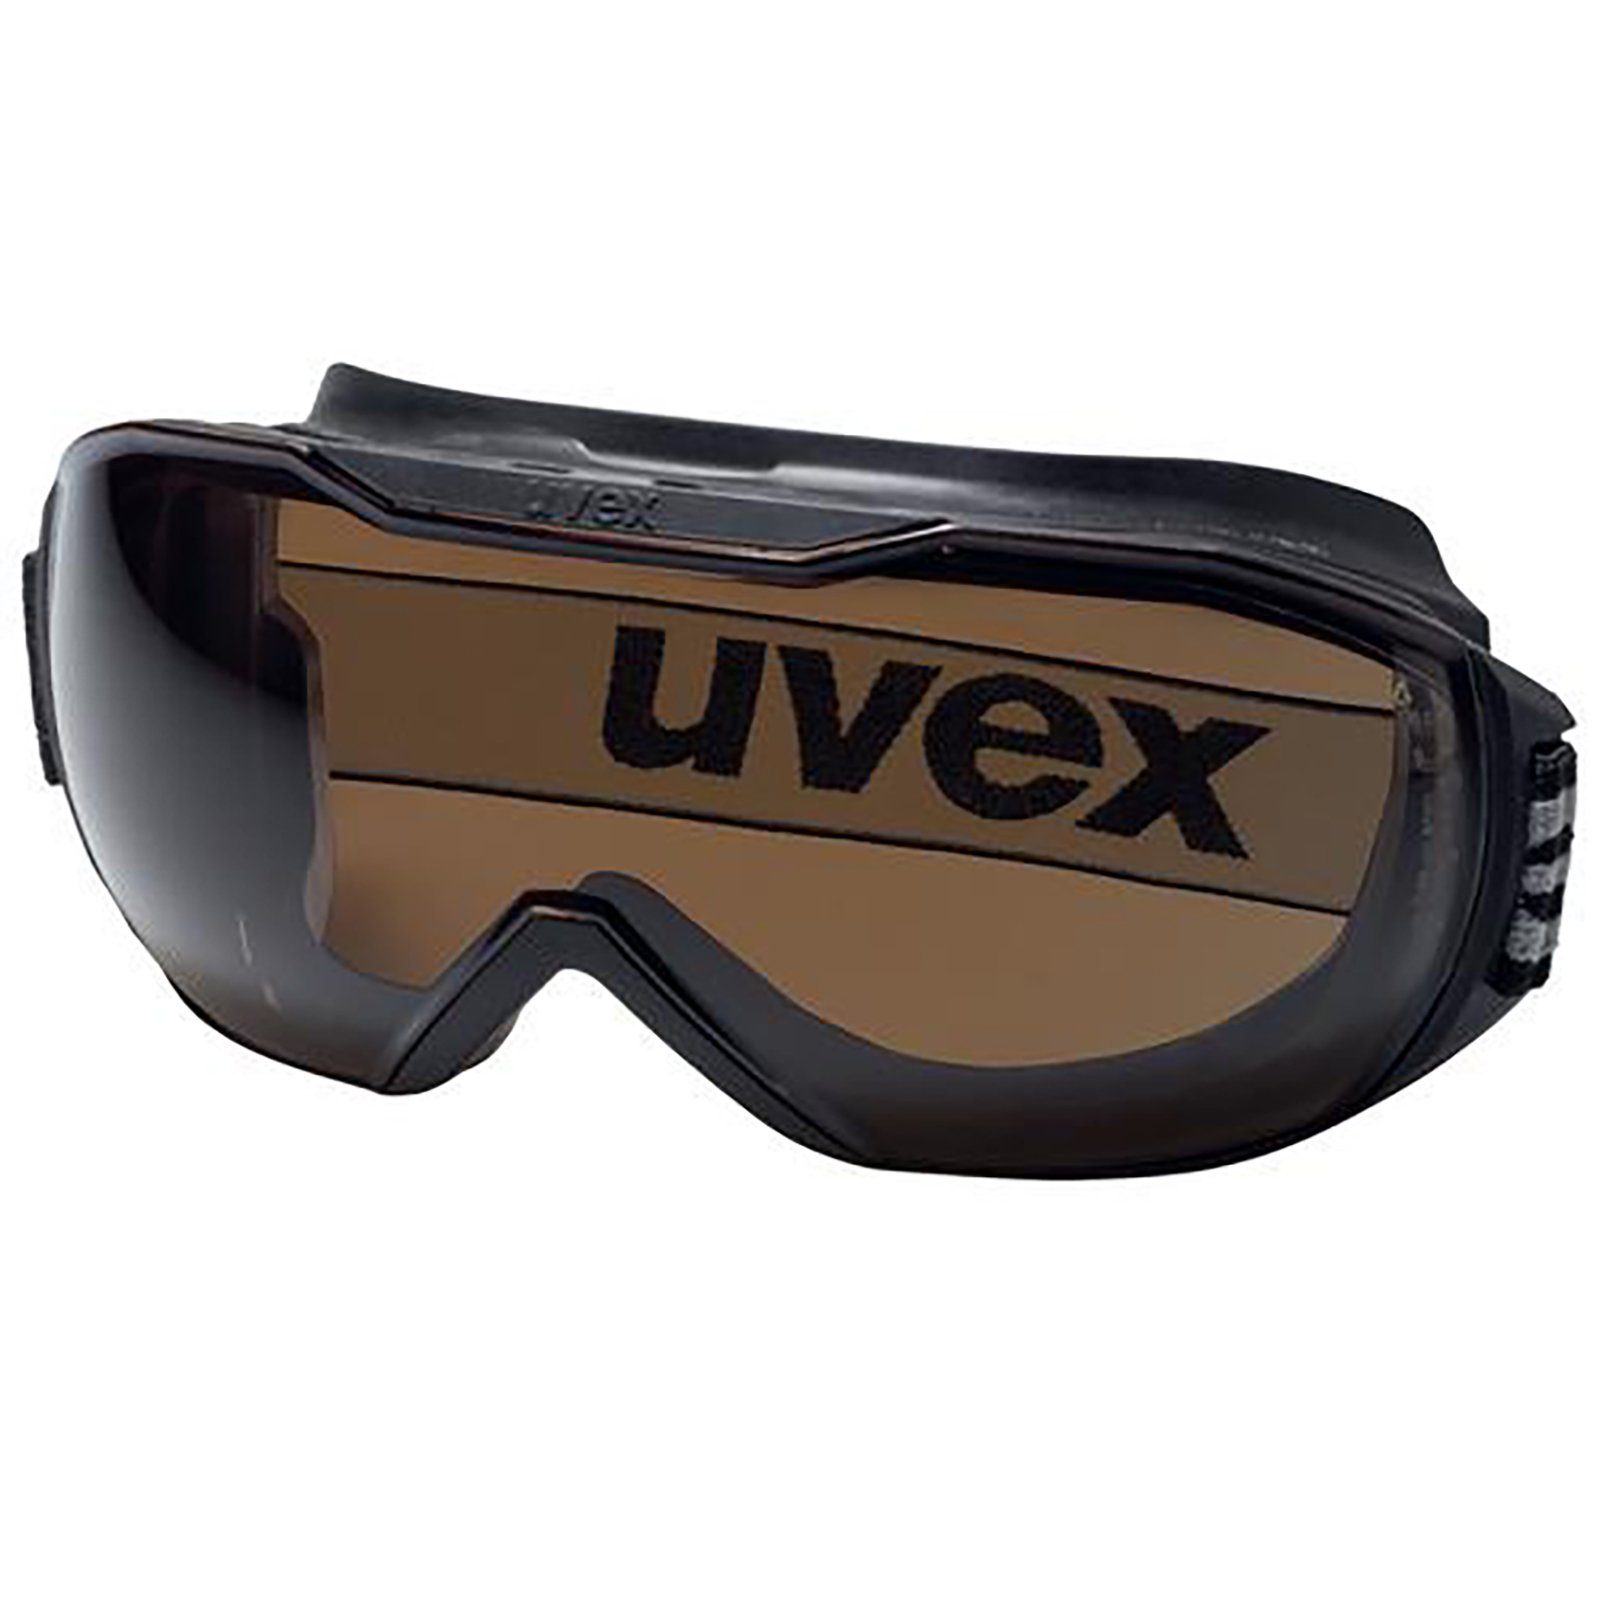 Uvex Arbeitsschutzbrille Vollsichtbrille megasonic 9320223 sv CBR23 exc